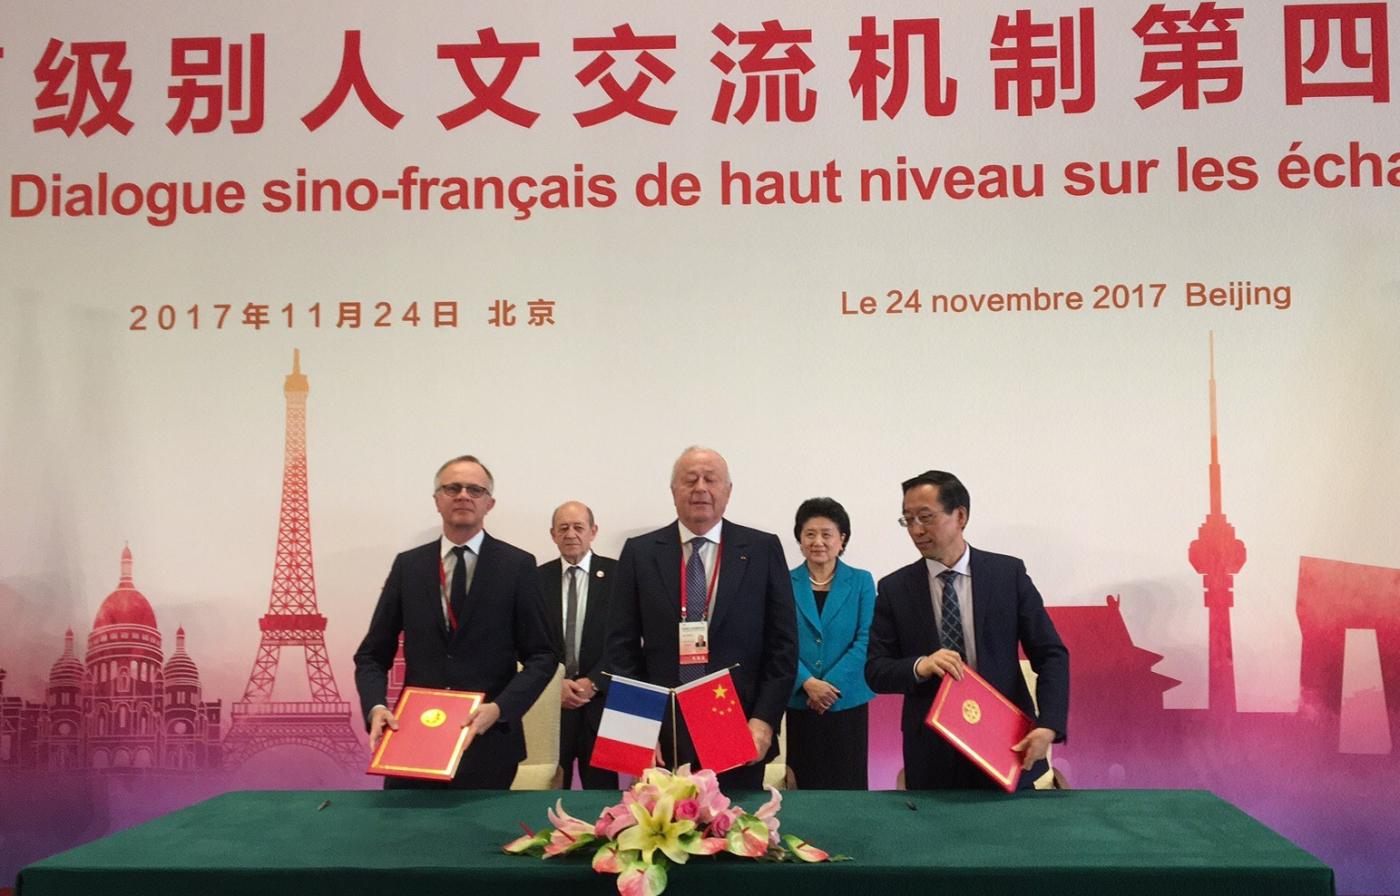 Signature G4 Chine - Réseau international des instituts Pasteur